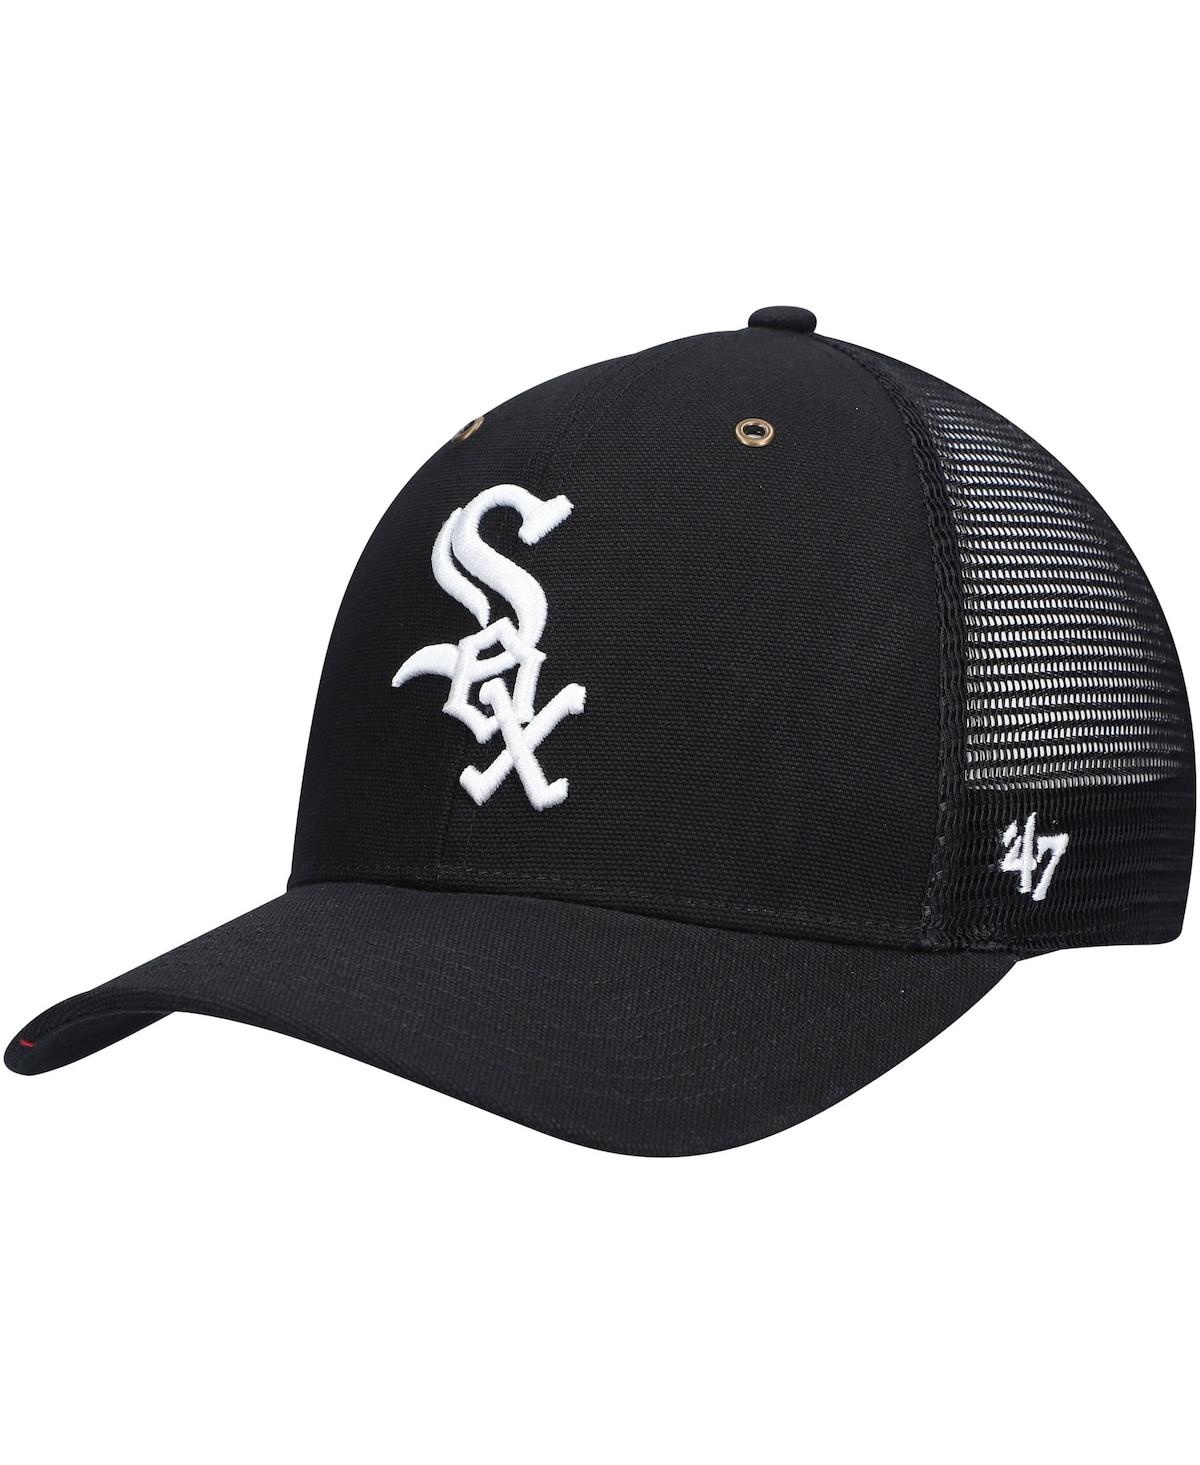 '47 Brand Men's Black Chicago White Sox Mvp Trucker Snapback Hat